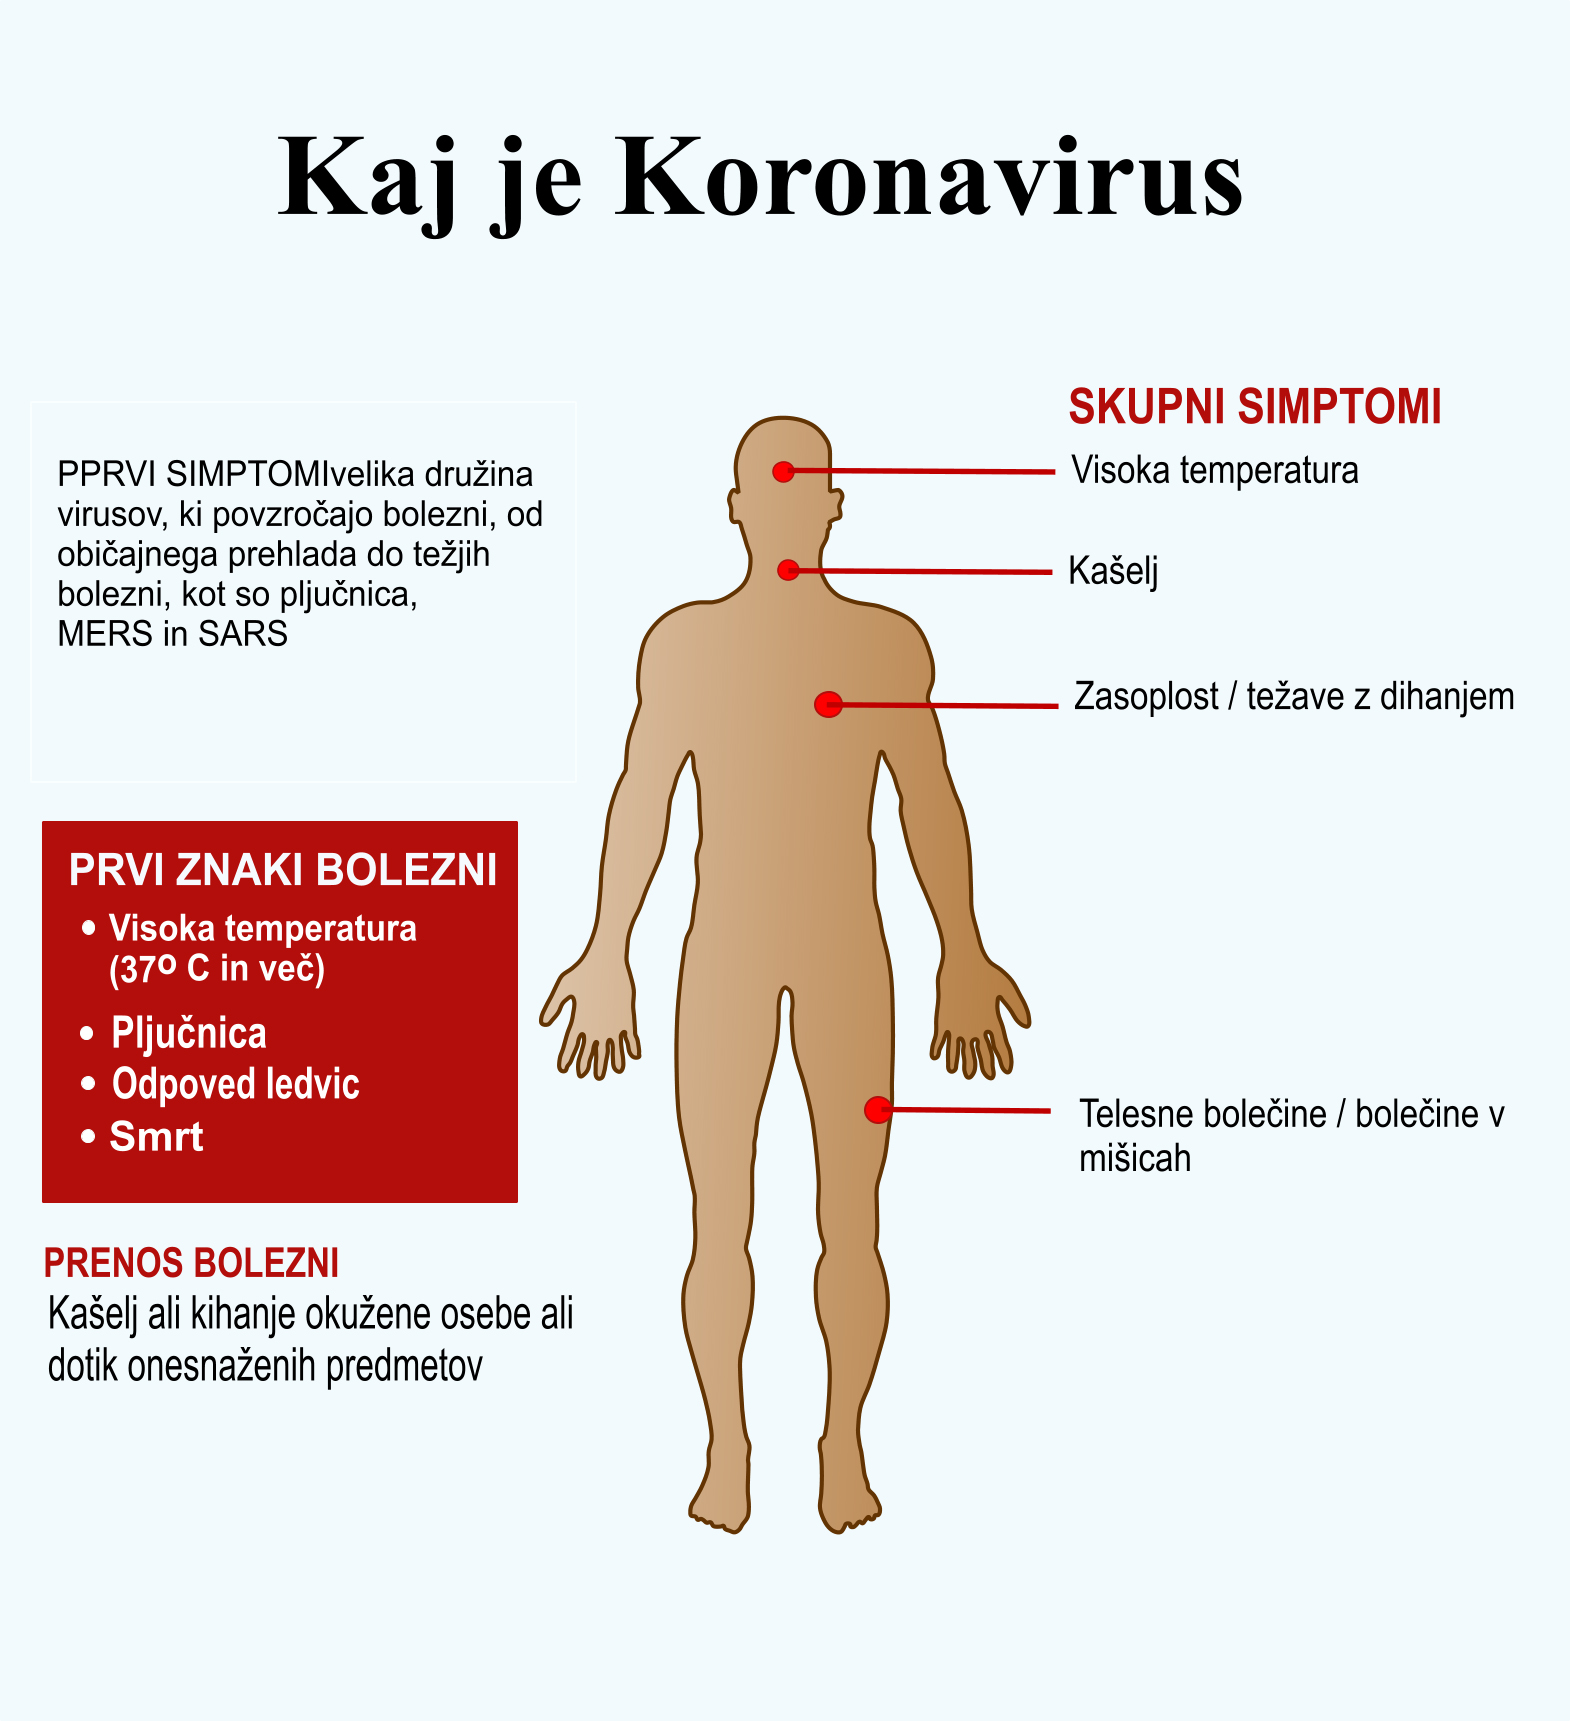 Kaj je Koronavirus copy